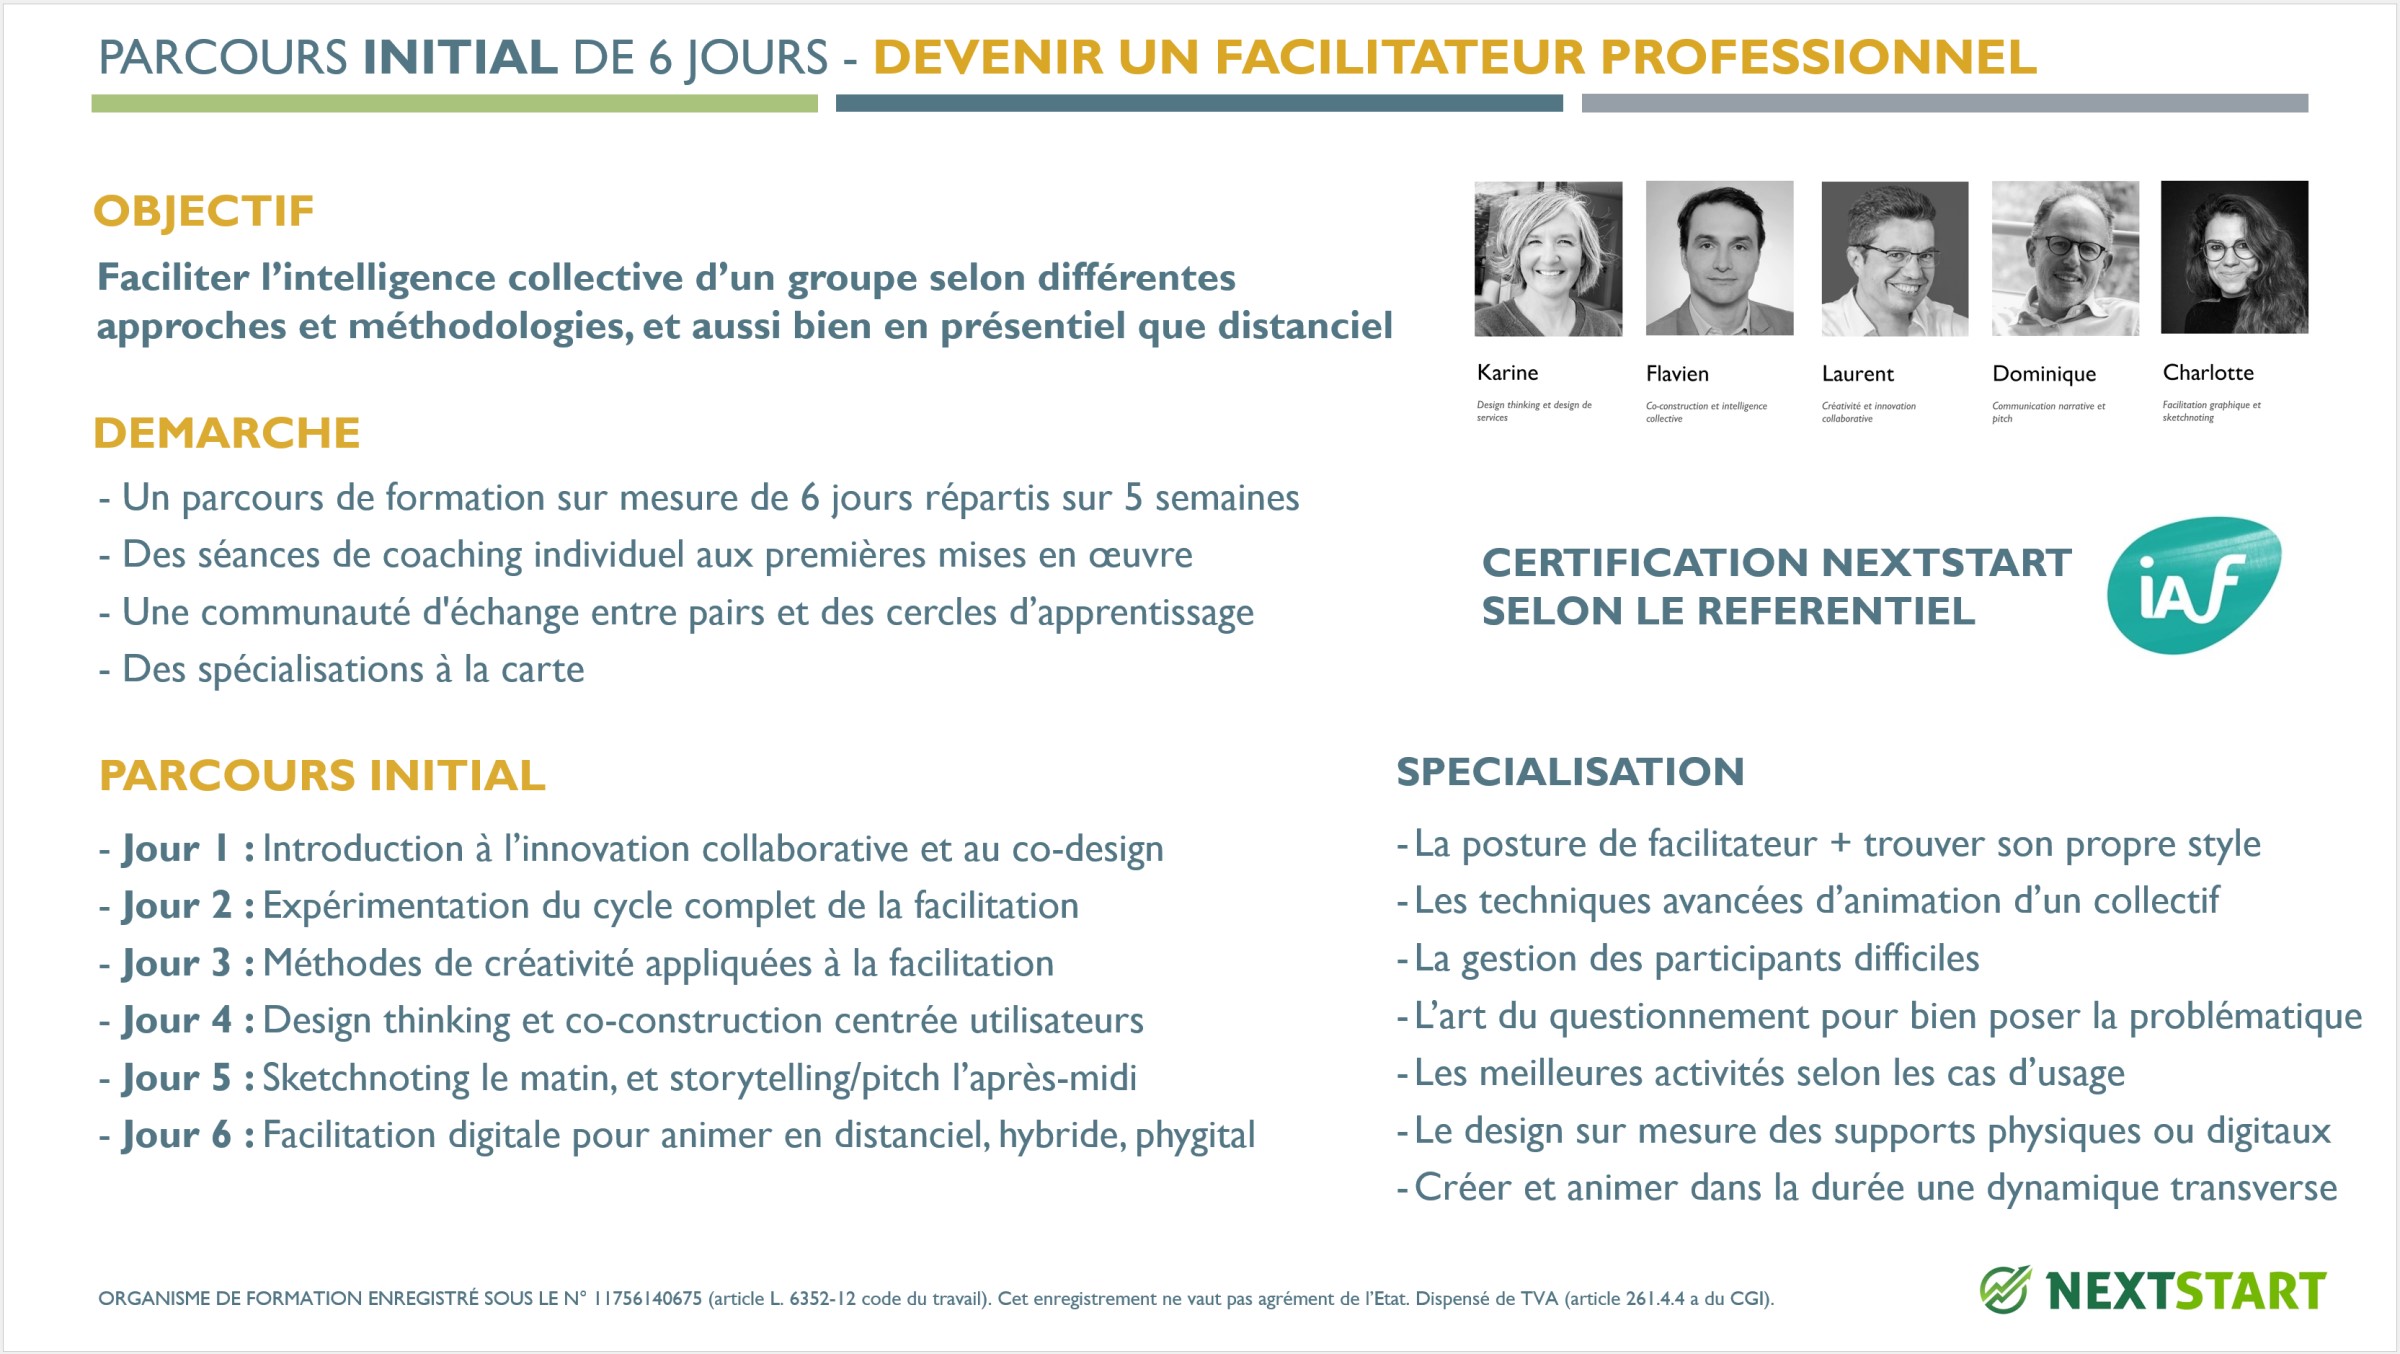 Parcours initial - Devenir un facilitateur professionnel d'ateliers collaboratifs / d'intelligence collective